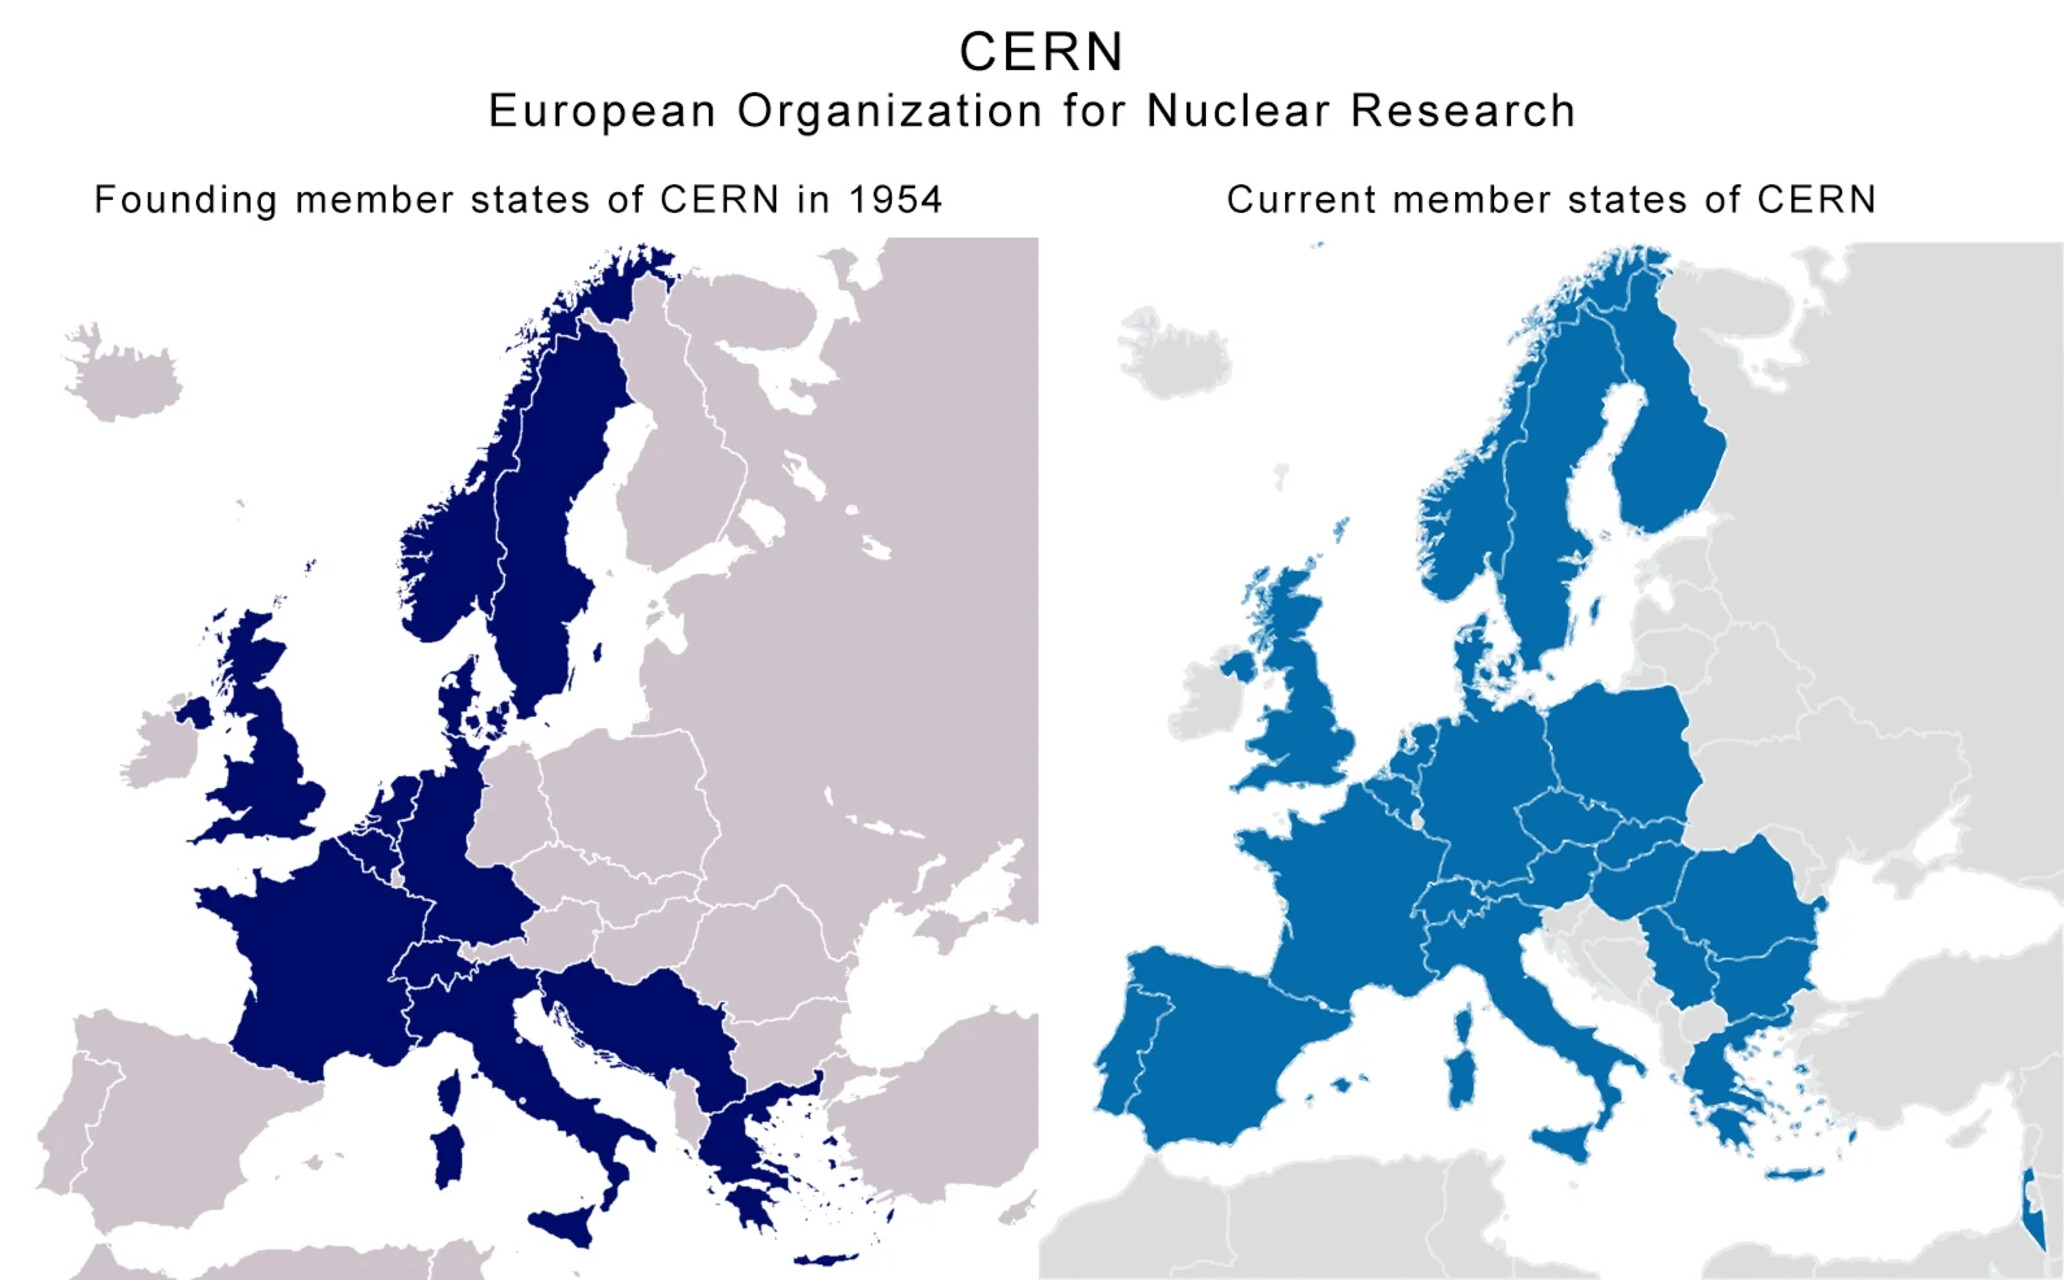 Brasilien: två kartor med en jämförelse mellan de grundande länderna och de nuvarande medlemsländerna i CERN